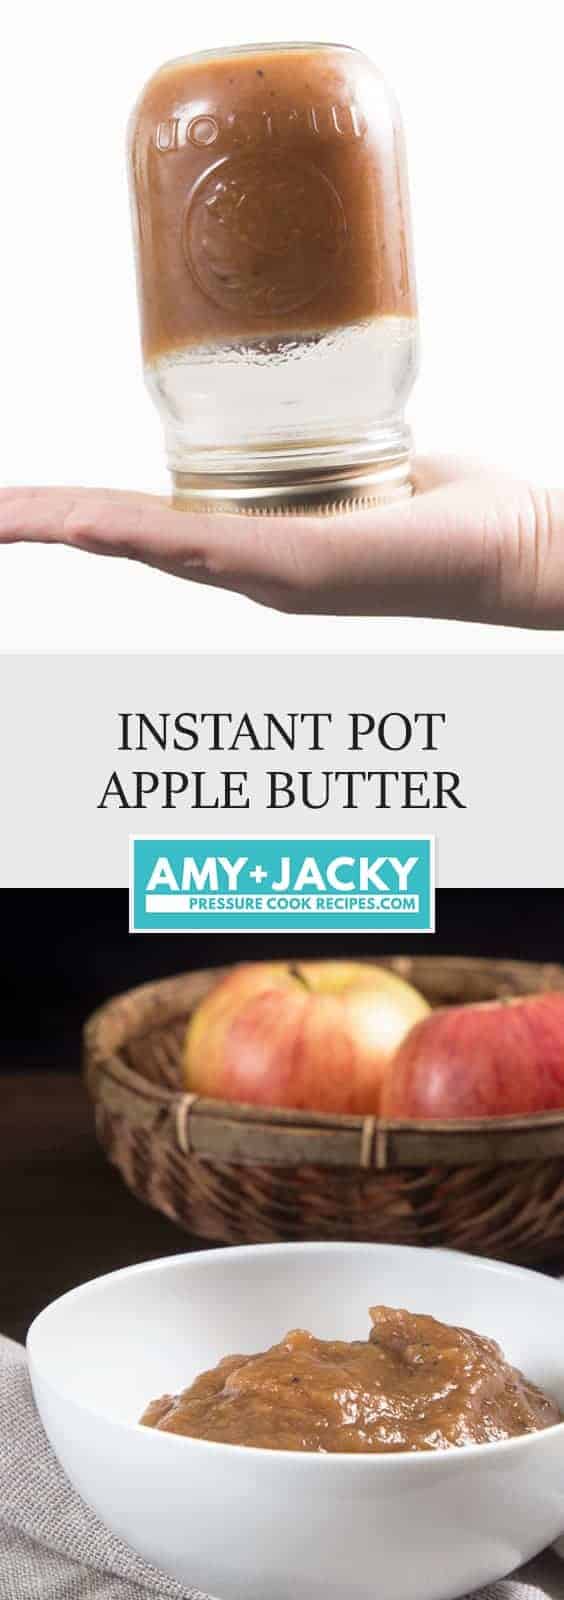 Instant Pot Apple Butter | Instapot Apple Butter | Pressure Cooker Apple Butter | Instant Pot Applesauce | Pressure Cooker Apple Sauce #instantpot #instapot #pressurecooker #recipes #fallrecipes #apple